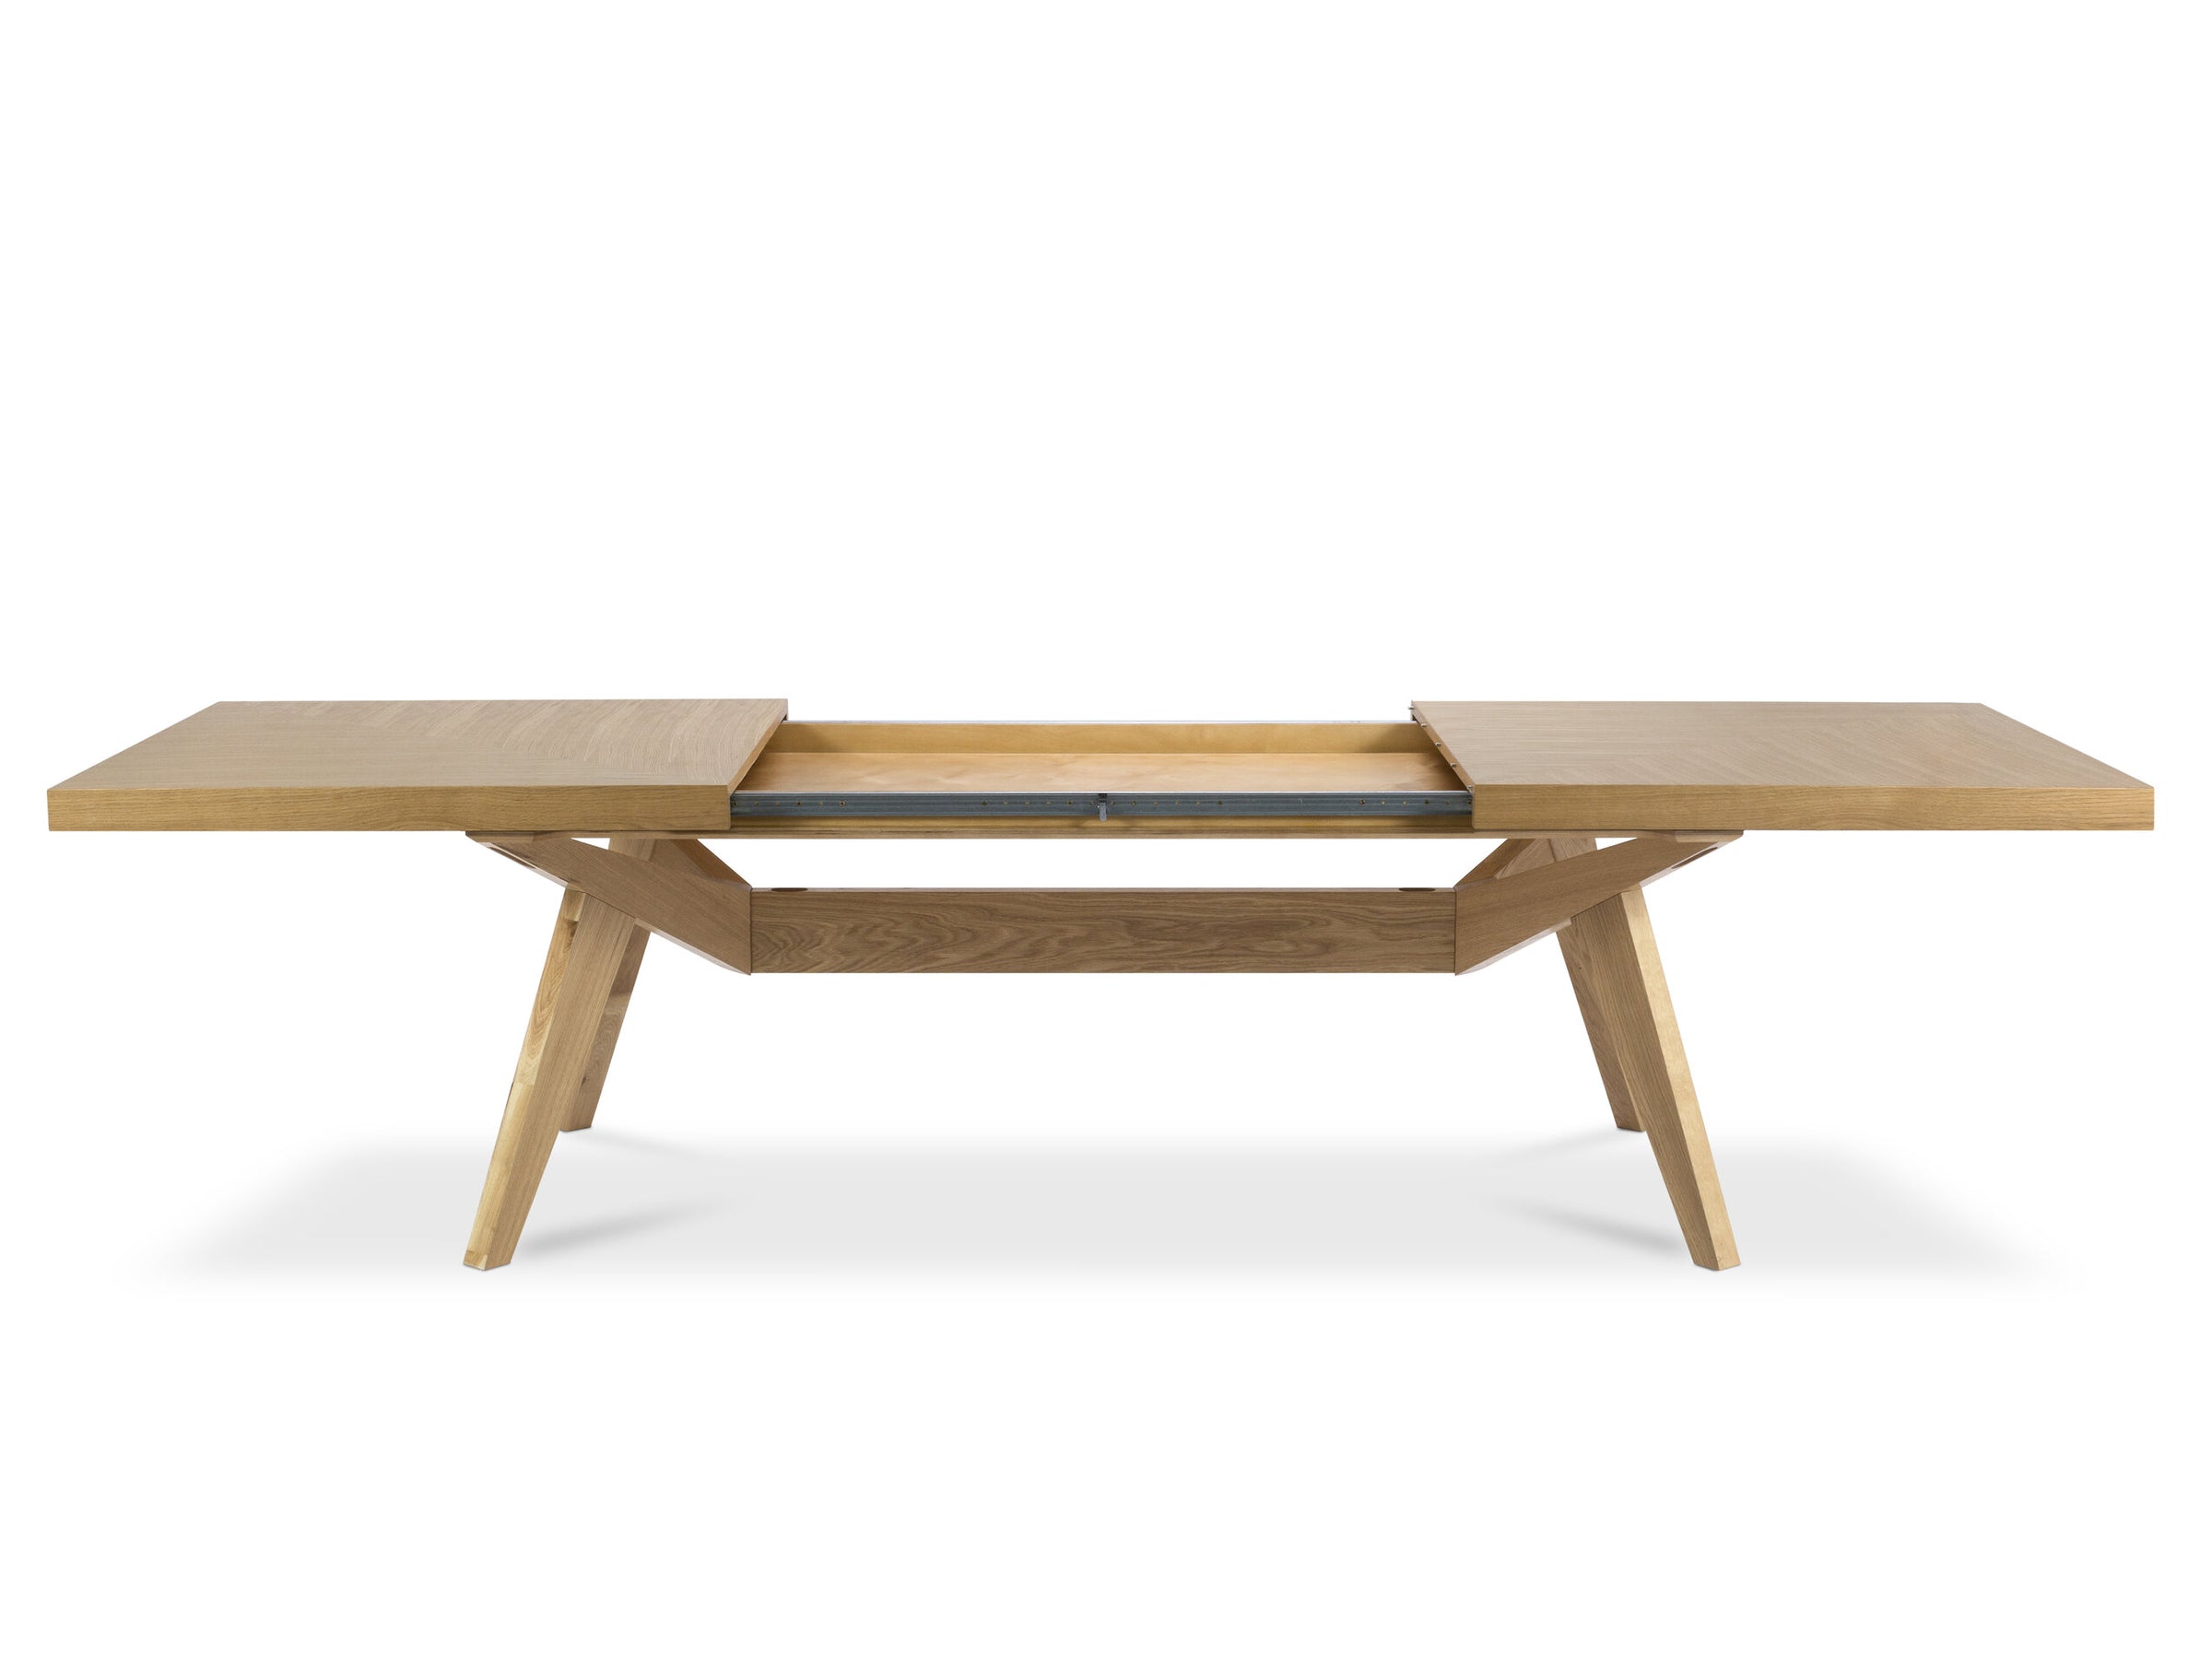 Richie tables & chairs wood natural oak veneer